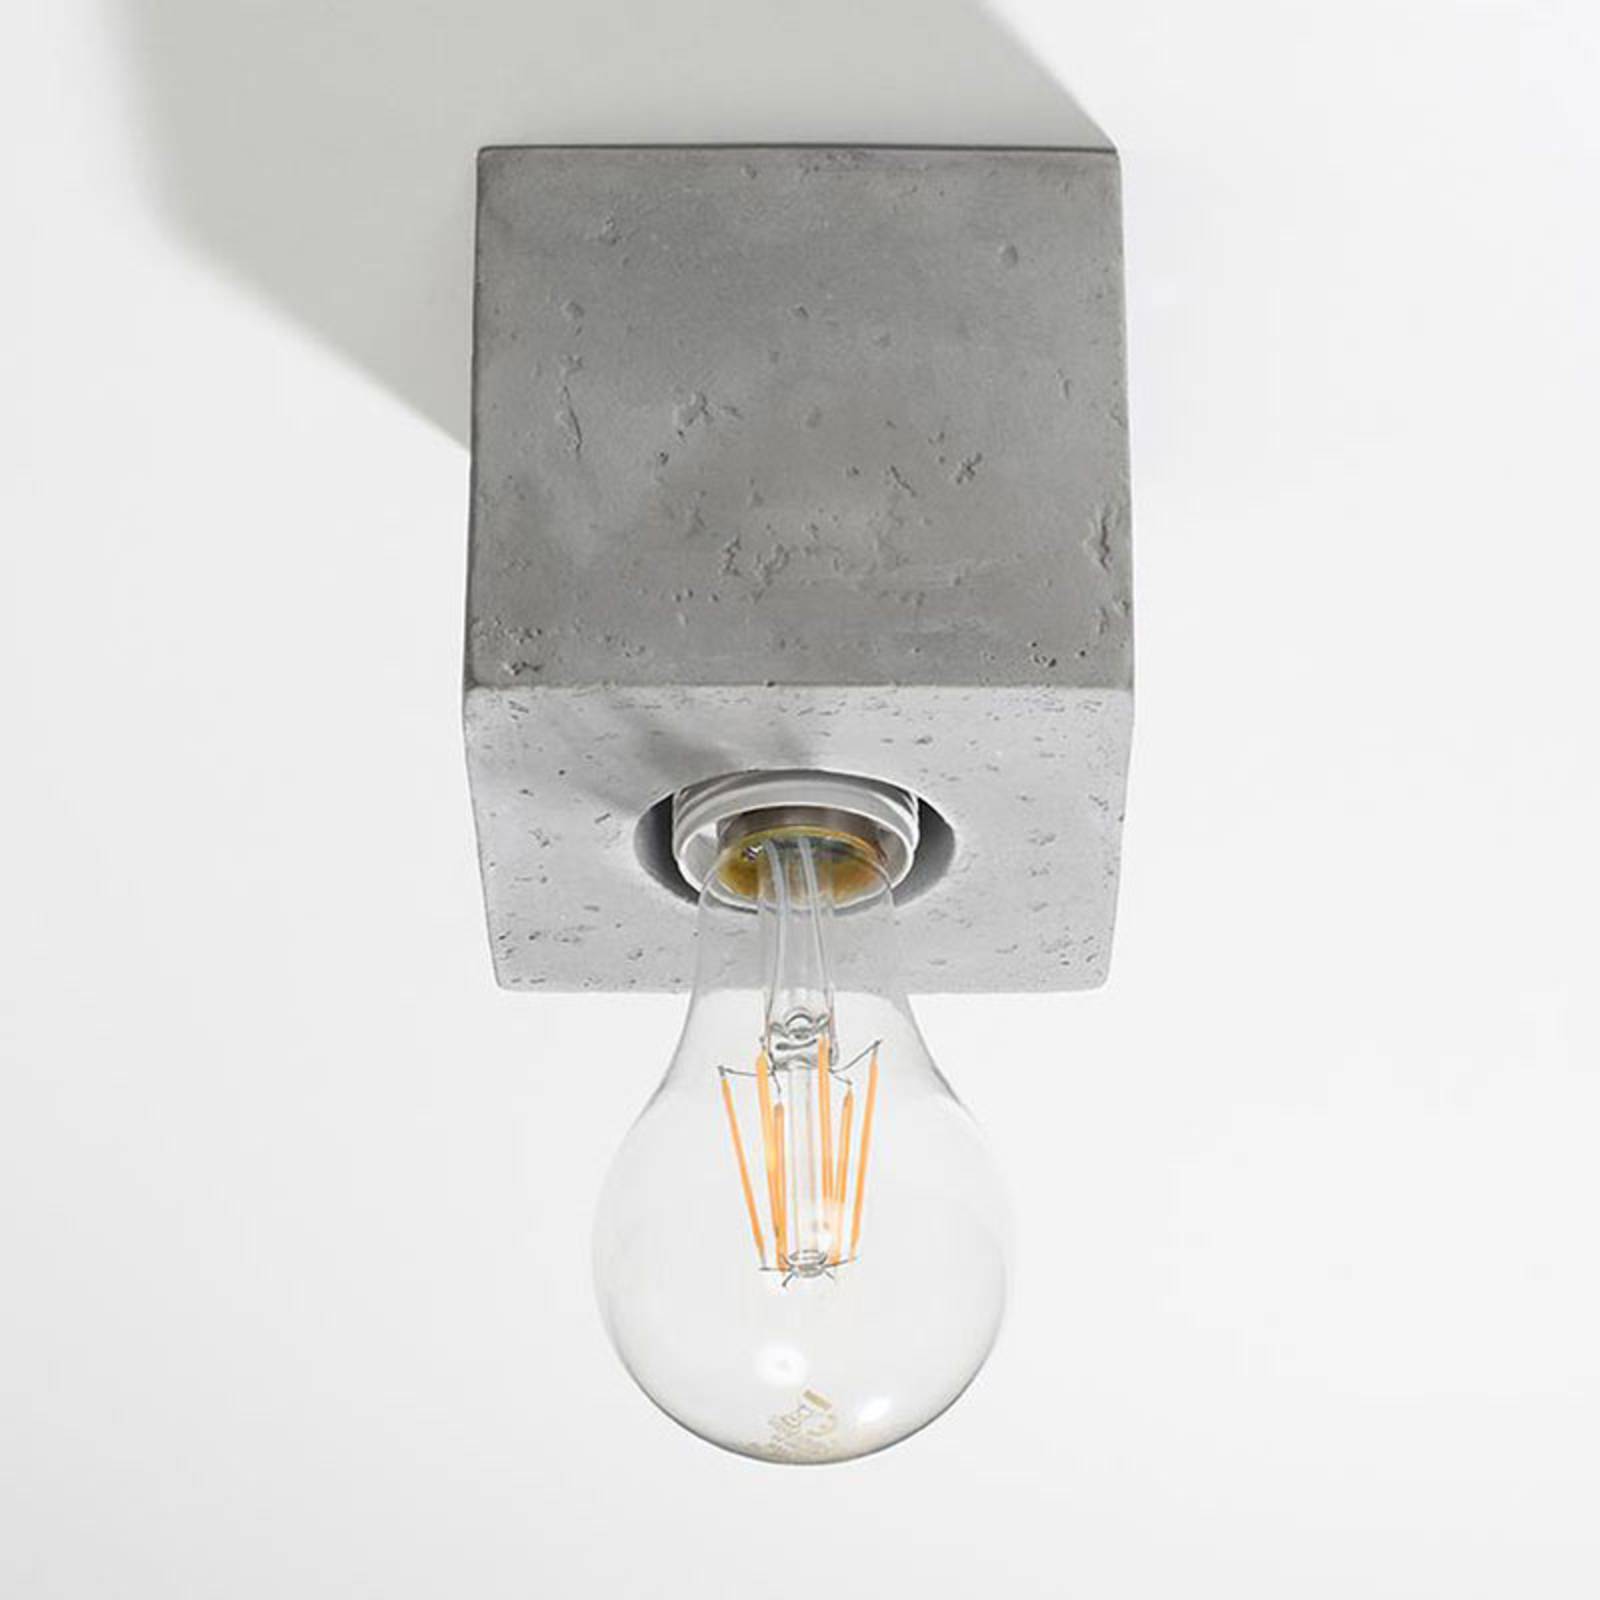 Lampa sufitowa Akira z betonu w formie sześcianu